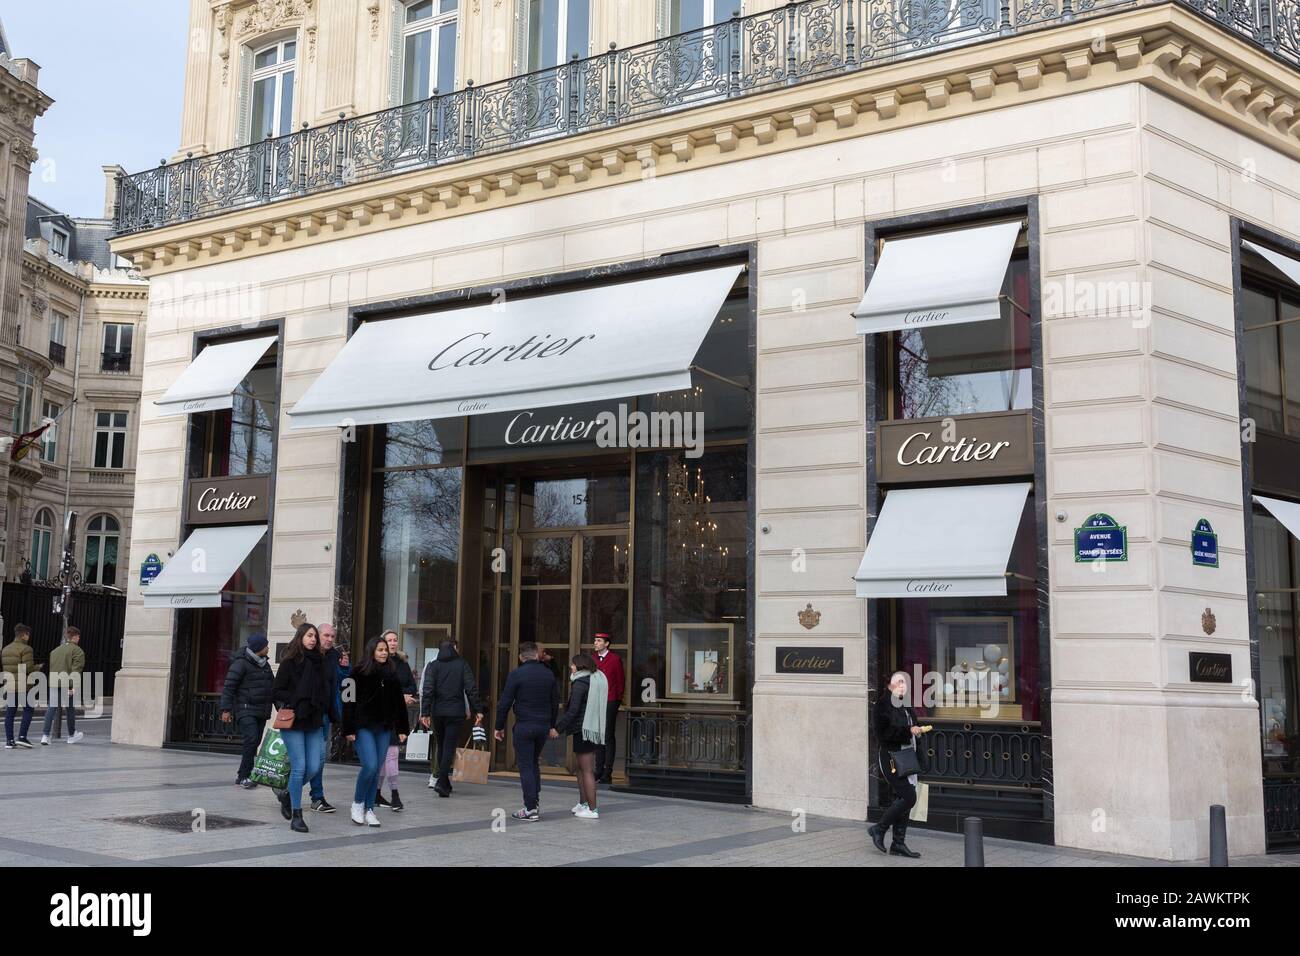 Vista laterale sul negozio Cartier agli Champs-Elysées. Persone (acquirenti?) con borse sono a piedi. Il marchio "Cartier" appartiene al gruppo Richemont. Foto Stock